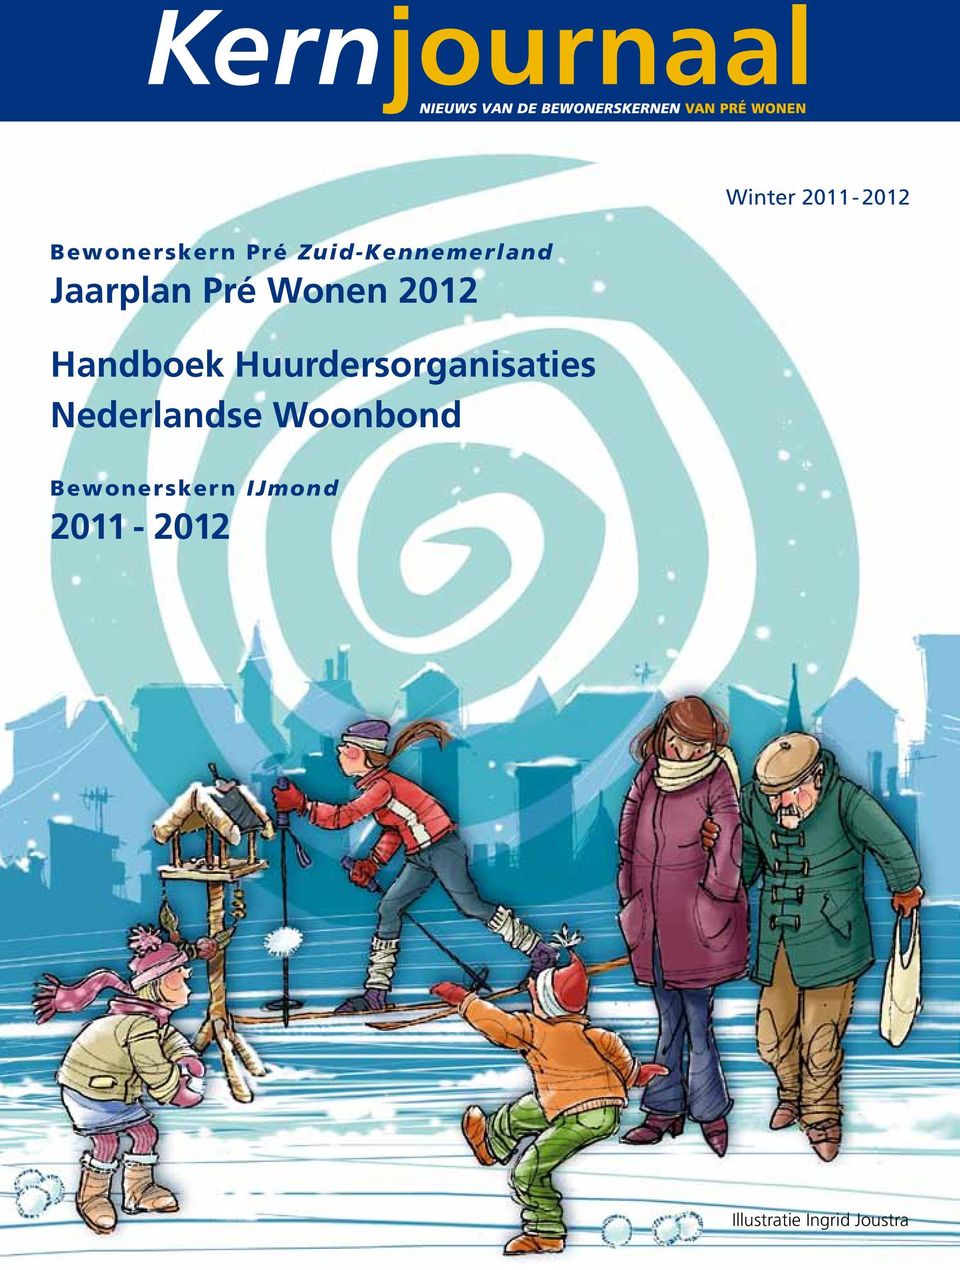 Handboek Huurdersorganisaties Nederlandse